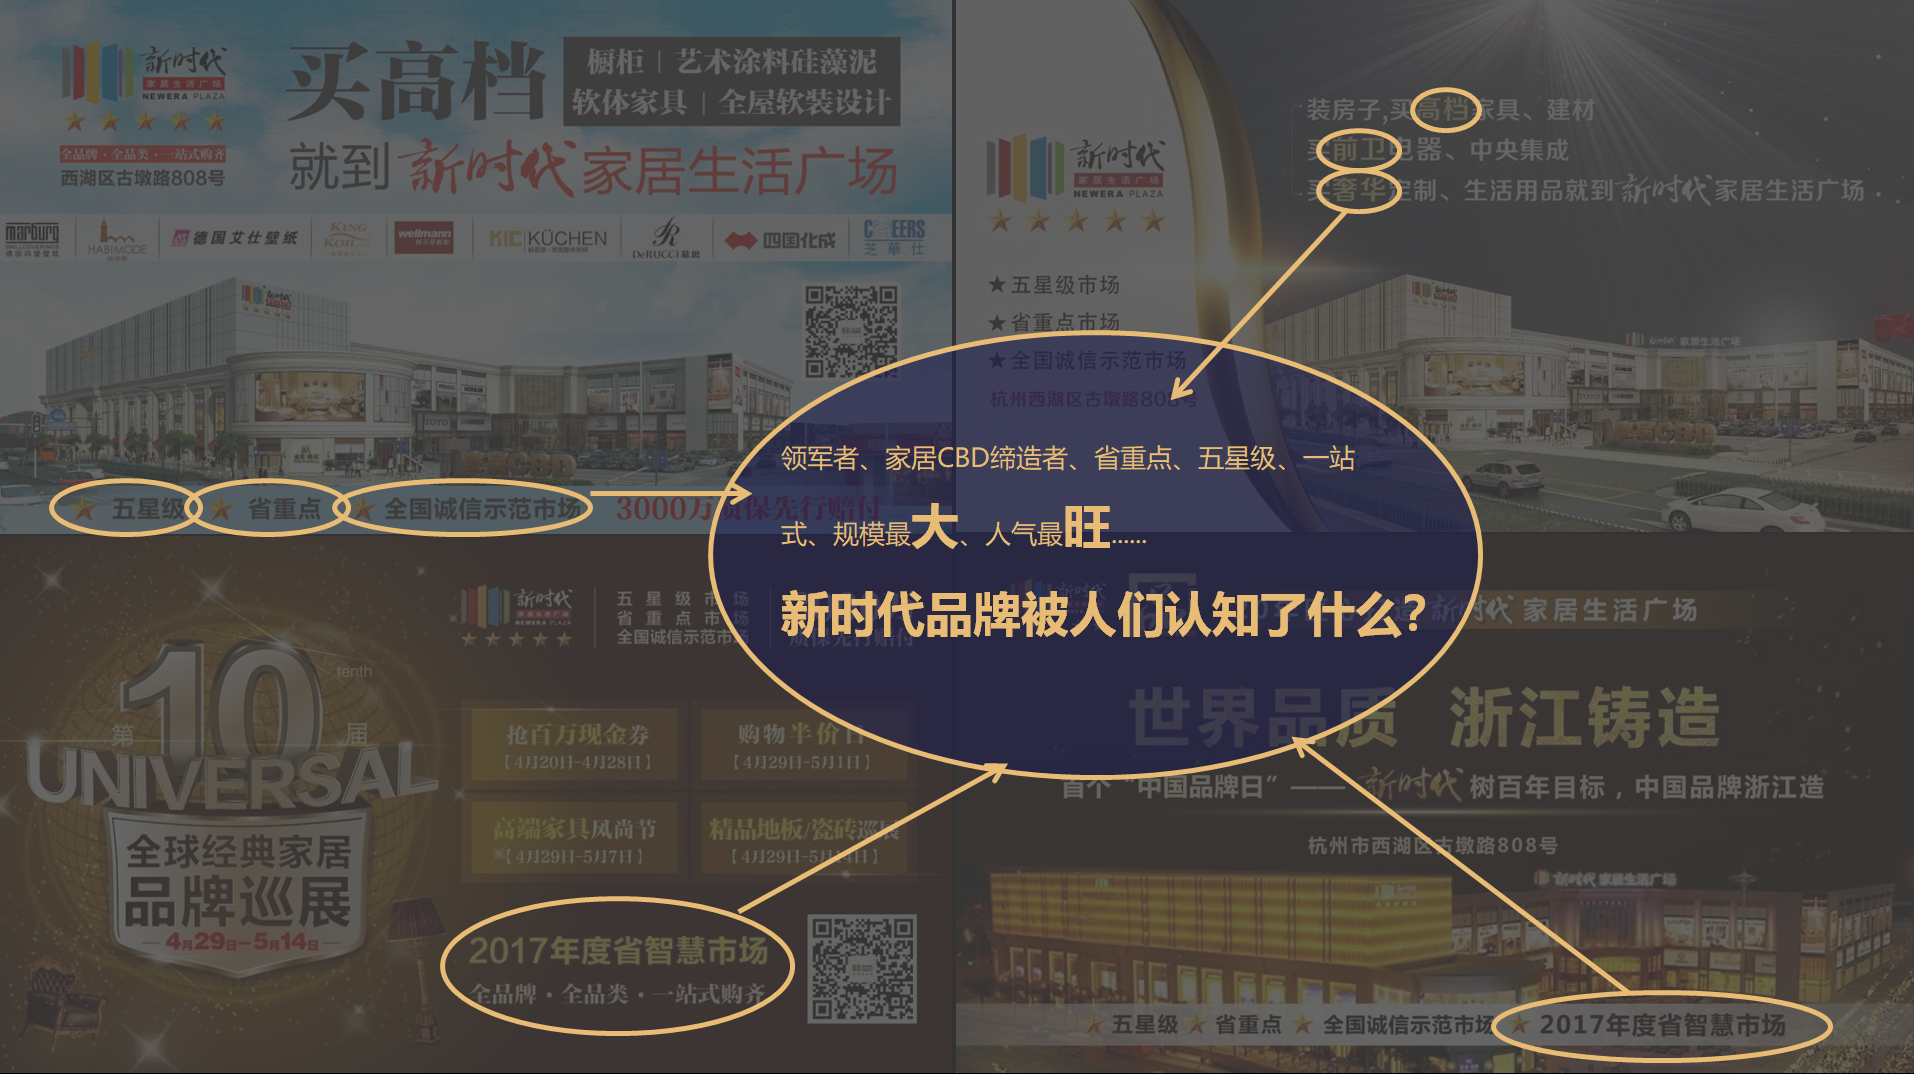 球王会平台是杭州品牌策划公司的代表